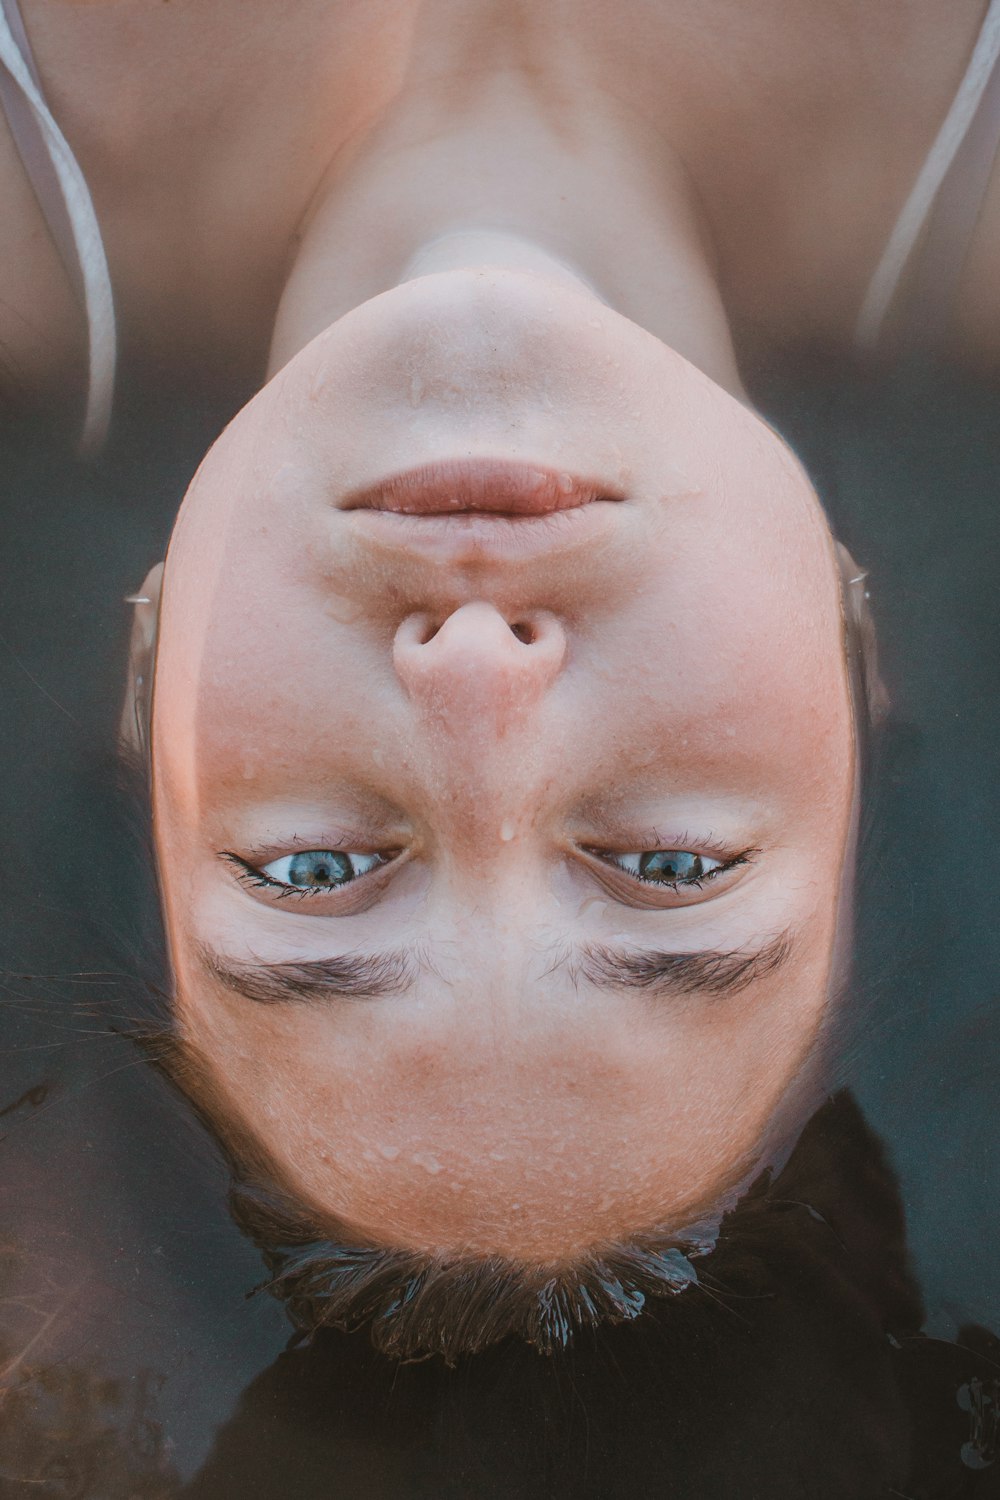 Femme allongée sur le plan d’eau en photographie en gros plan